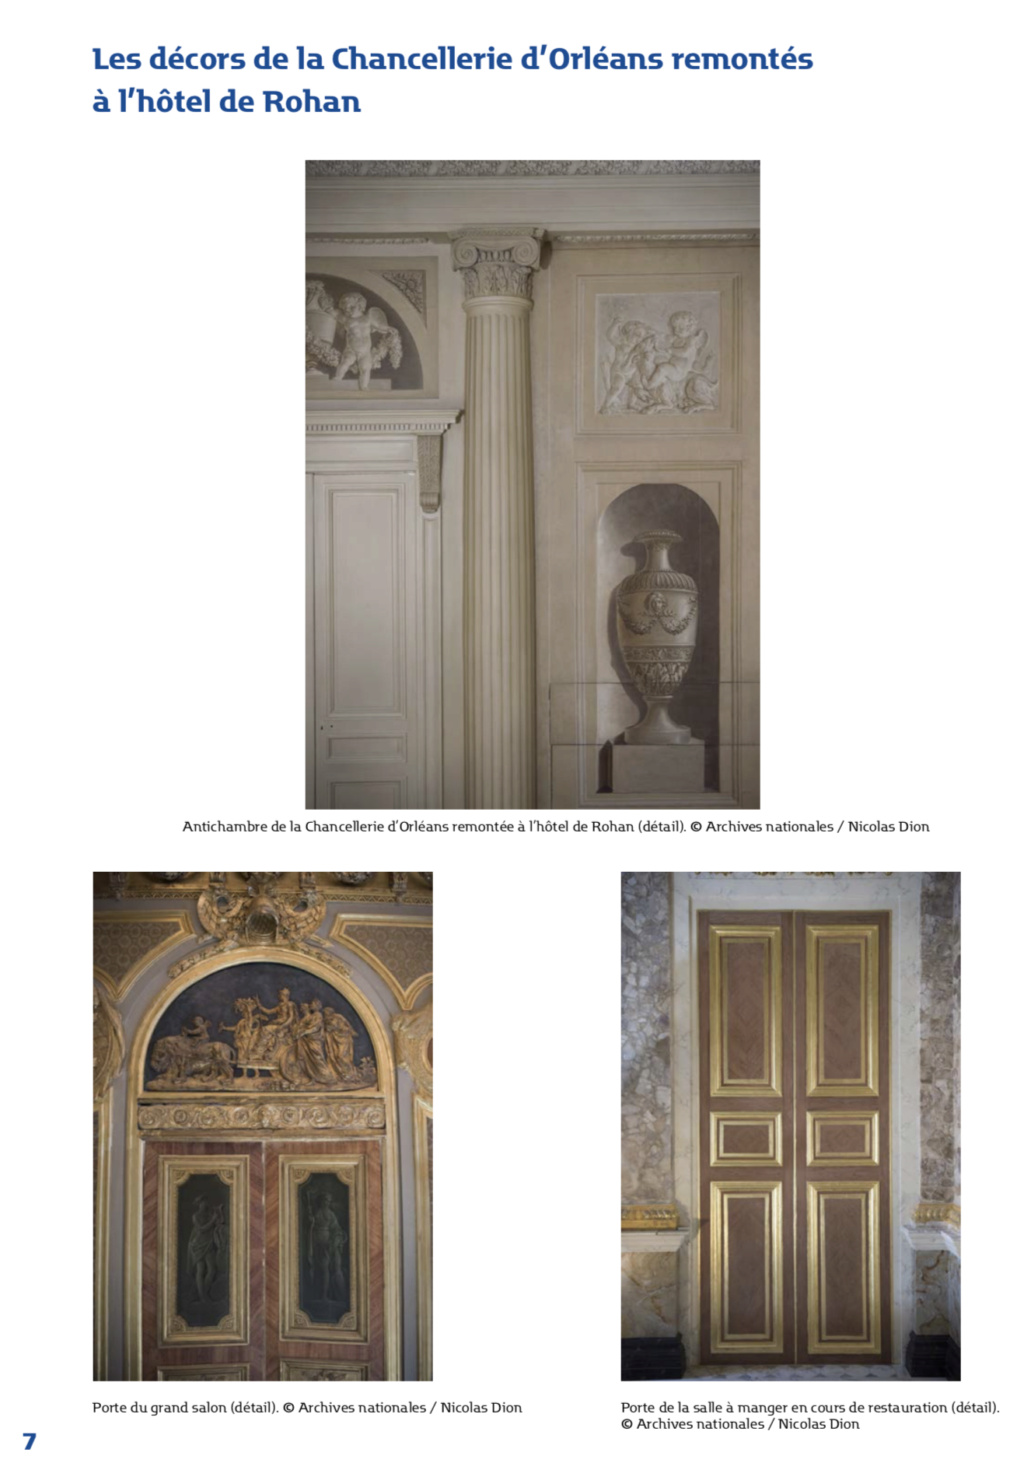 L'hôtel de Rohan (Paris), et les décors de la Chancellerie d’Orléans - Page 2 Capt3941